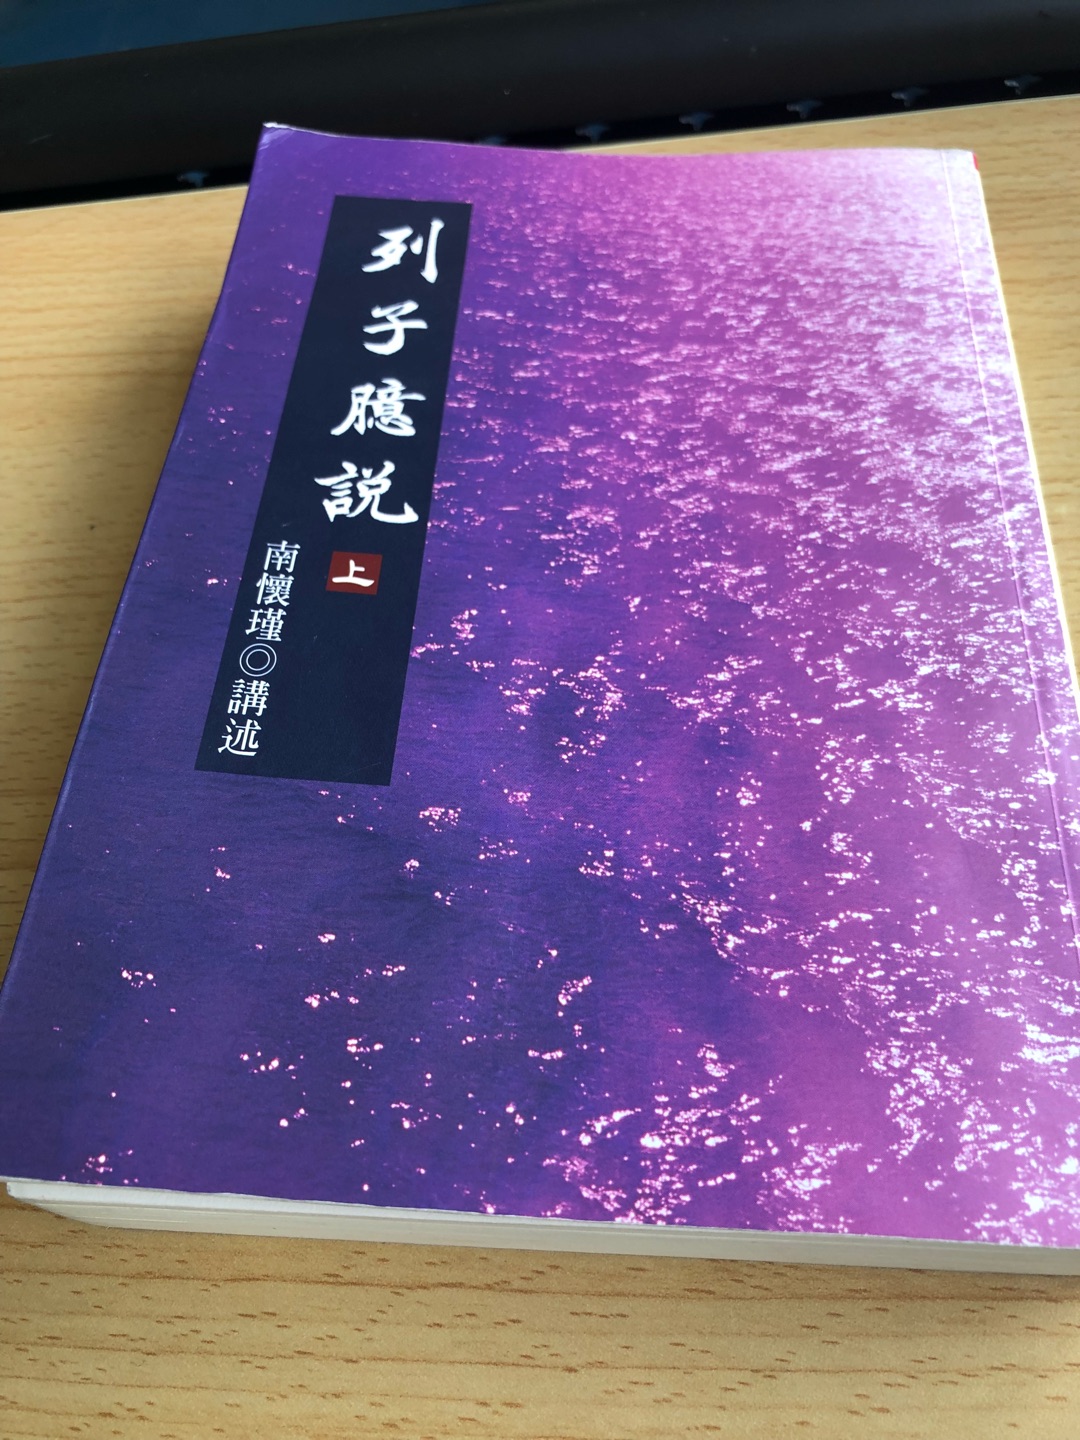 这书是摘录名人名篇关于孤独的选段。记得15年上海戏剧学院 戏剧影视文学系 初试散文题目就是《孤独》。